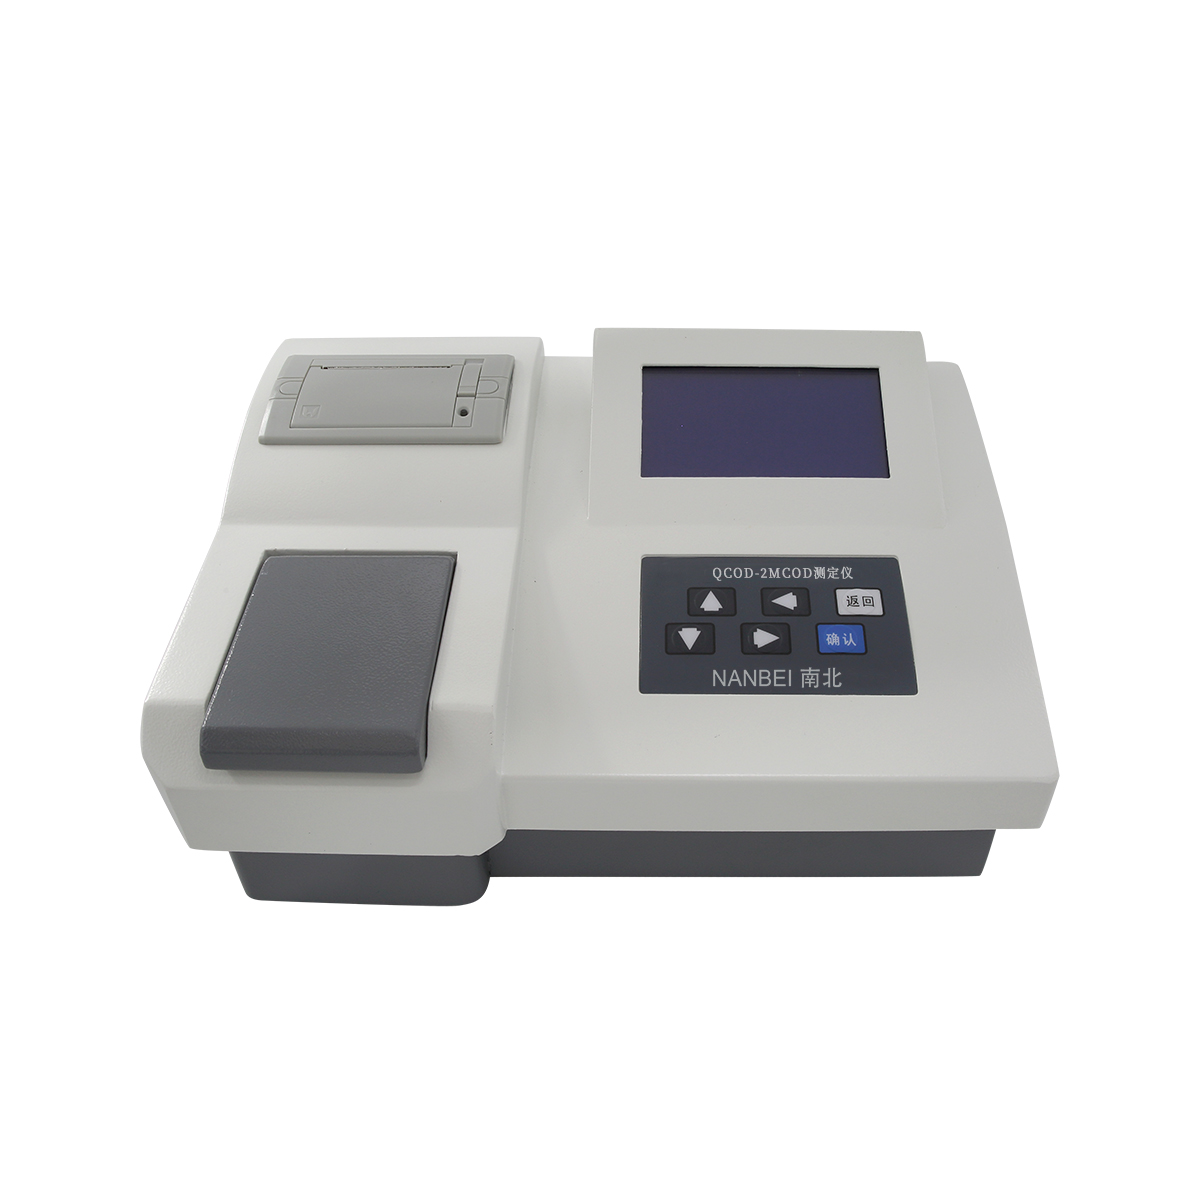 CNPN-401 ХПК. аммиачный азот. общий фосфор. анализатор общего азота